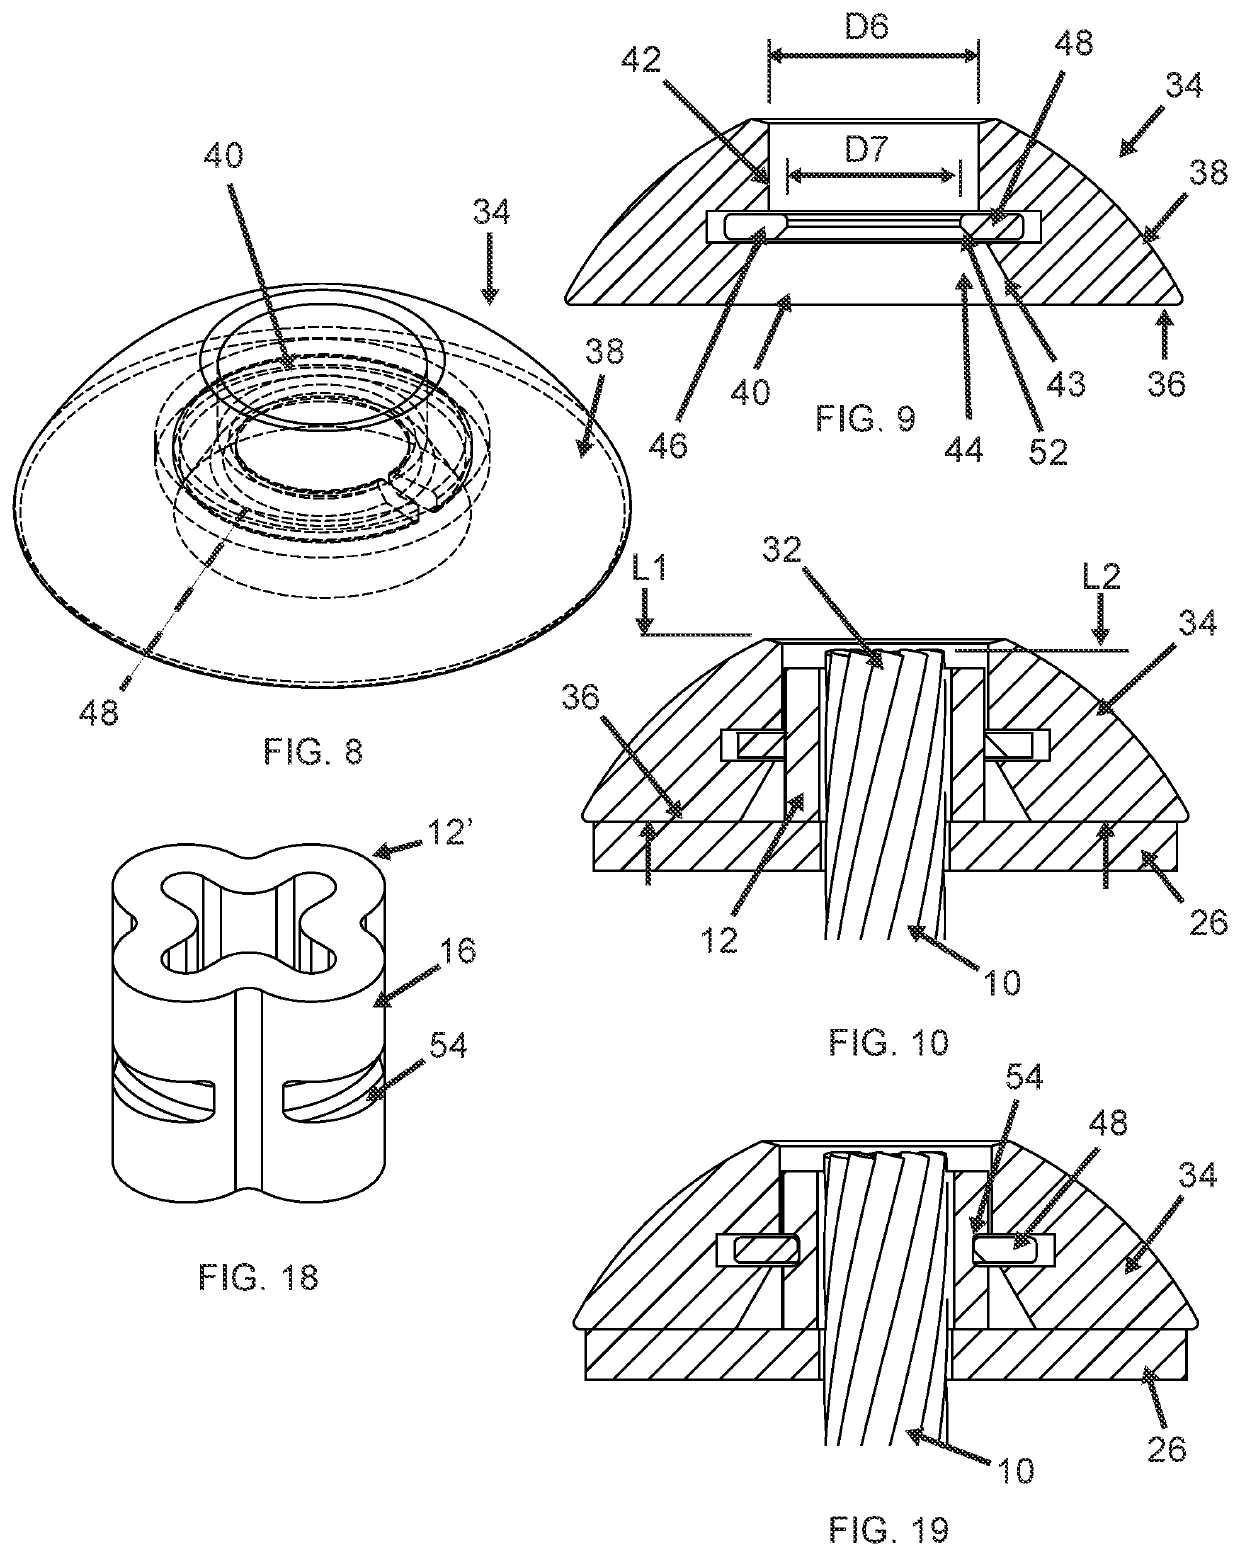 Cable crimp cap apparatus and method